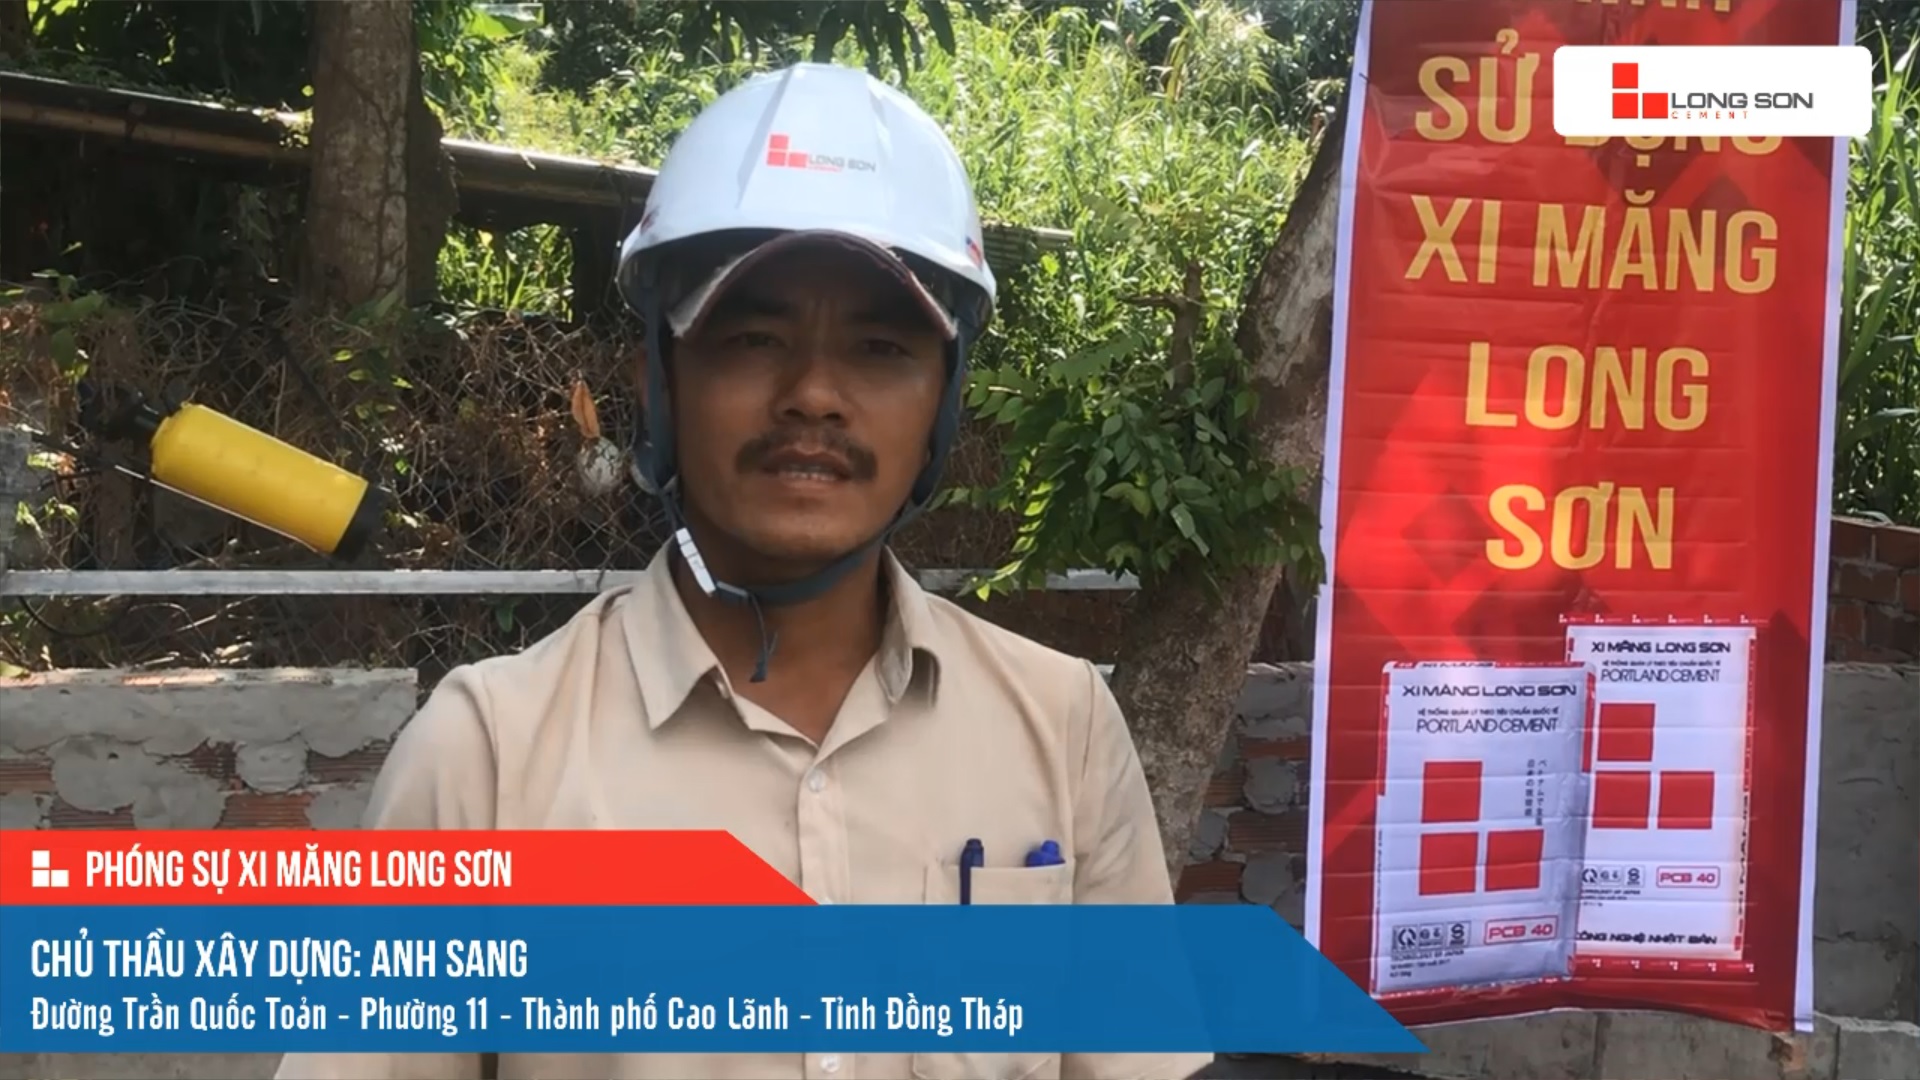 Phóng sự công trình sử dụng Xi măng Long Sơn tại Đồng Tháp 13.04.2021